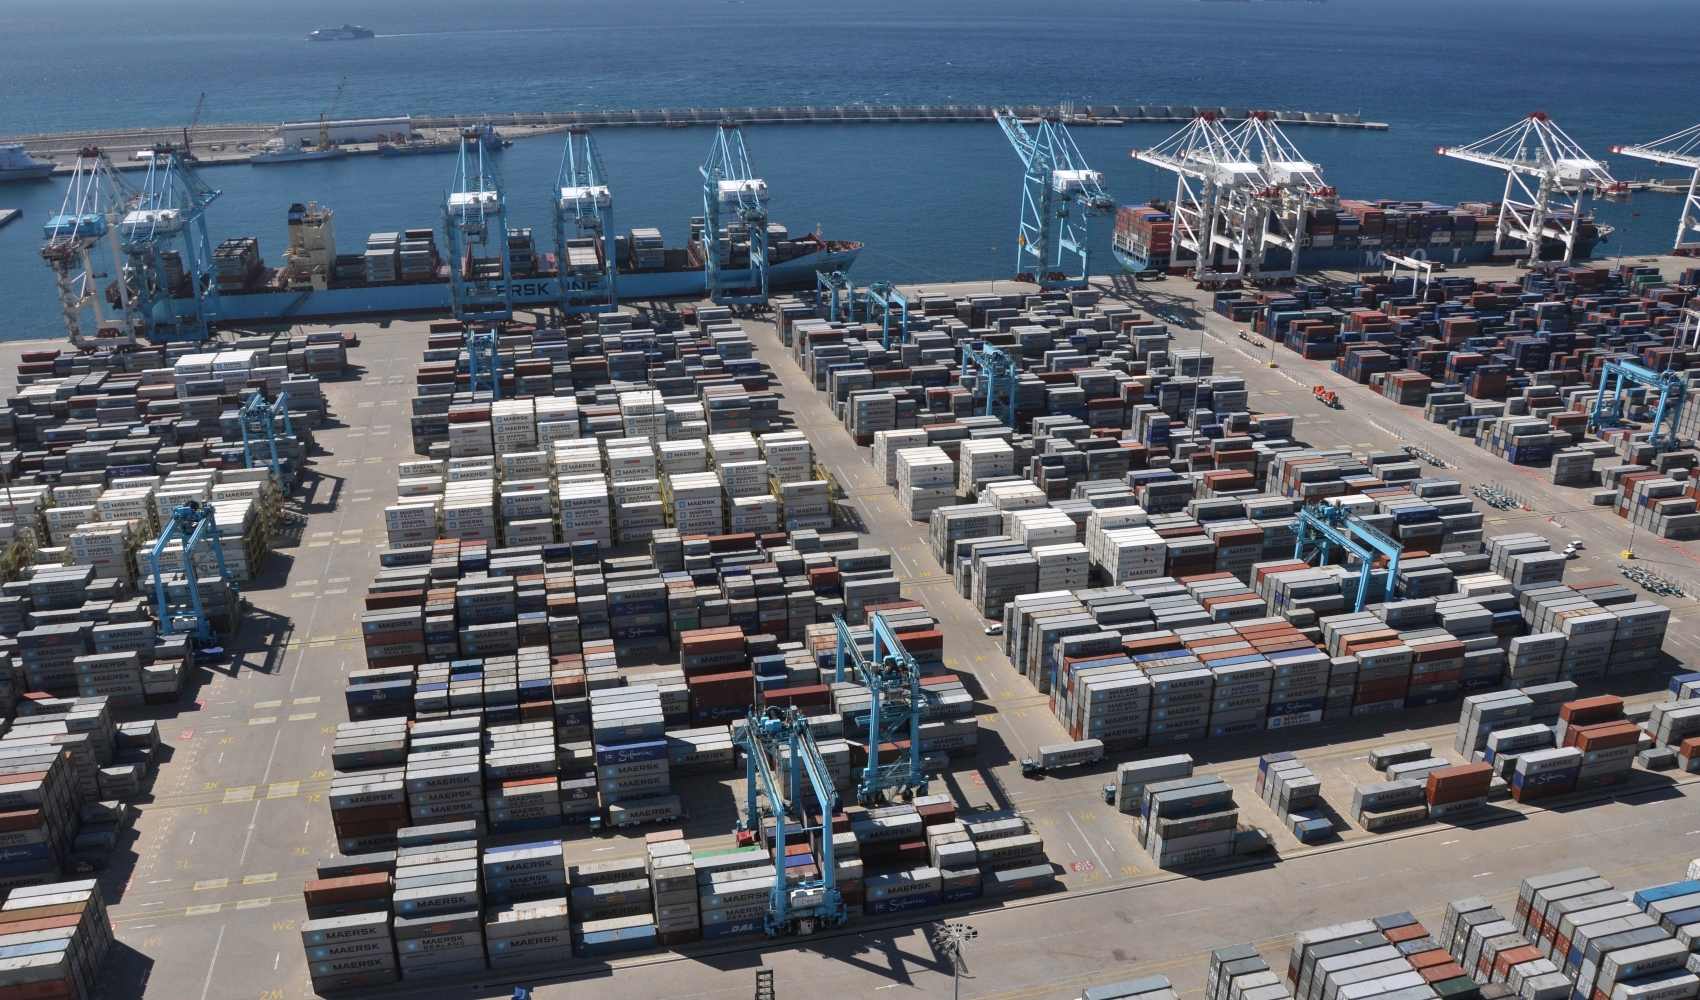 
The Financial Times: контейнерный порт Tanger-Med в Марокко обеспечивает мост в Европу